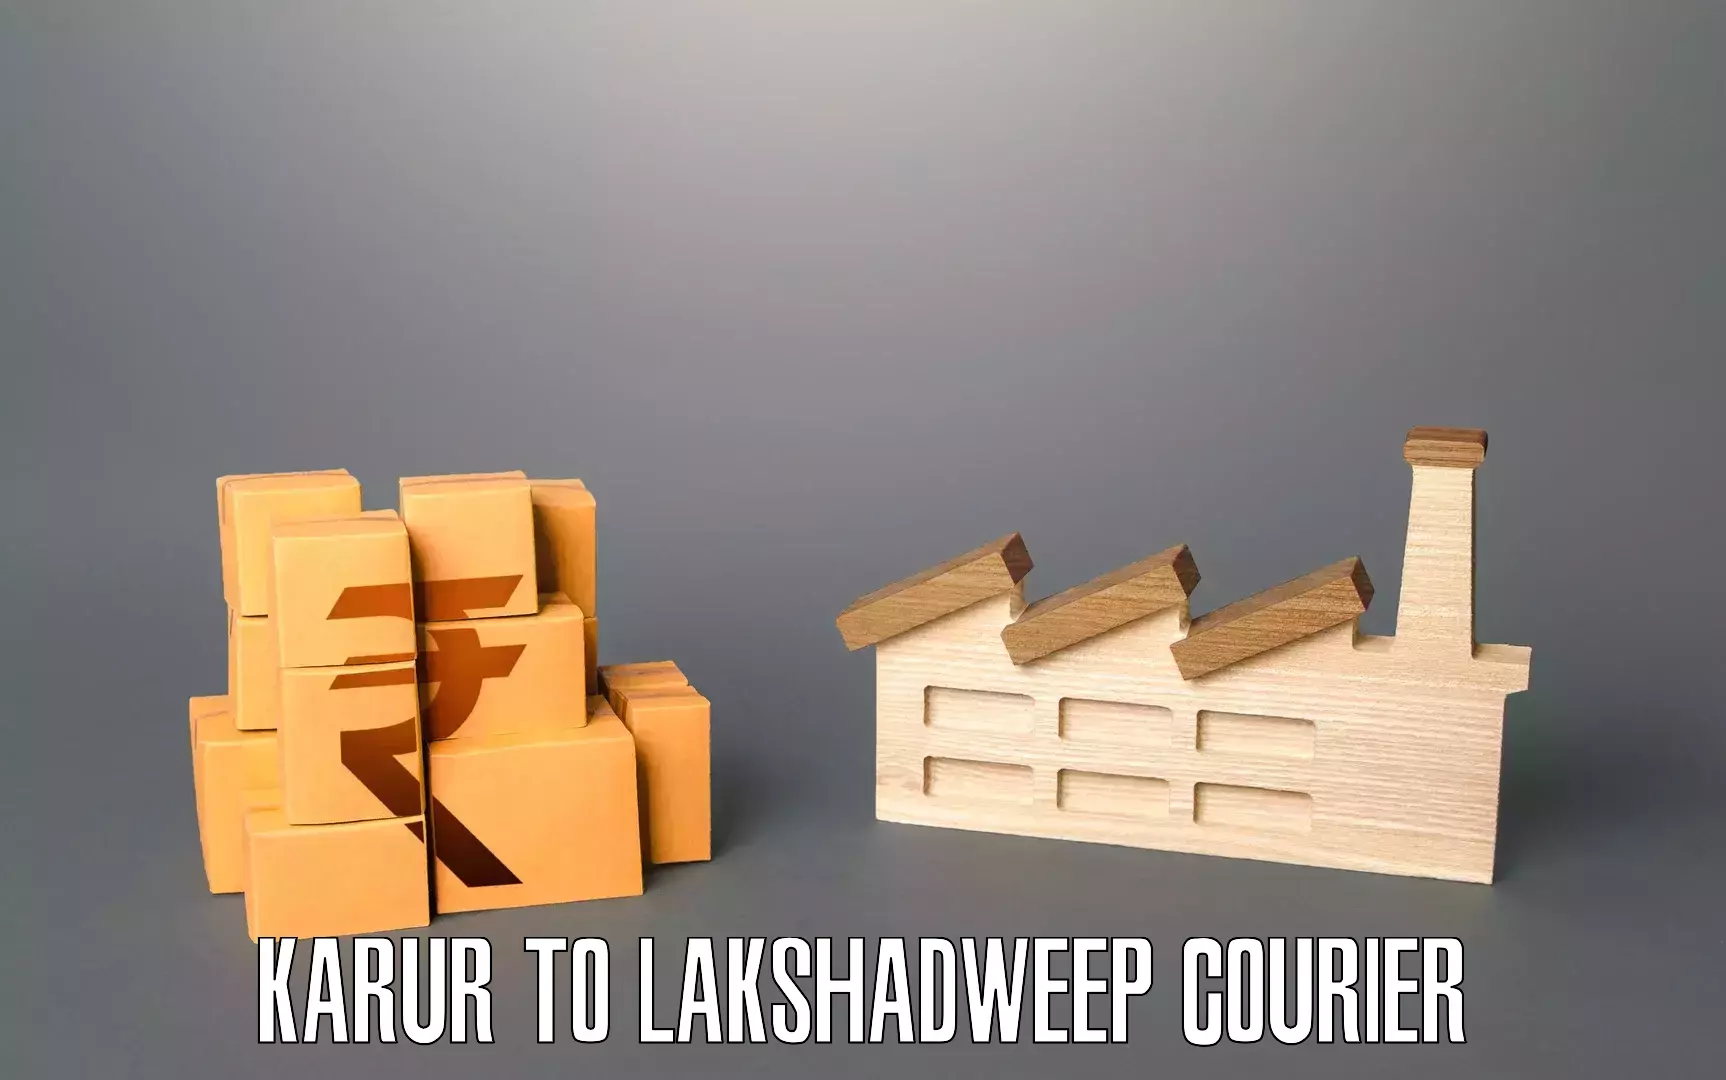 Furniture moving experts Karur to Lakshadweep